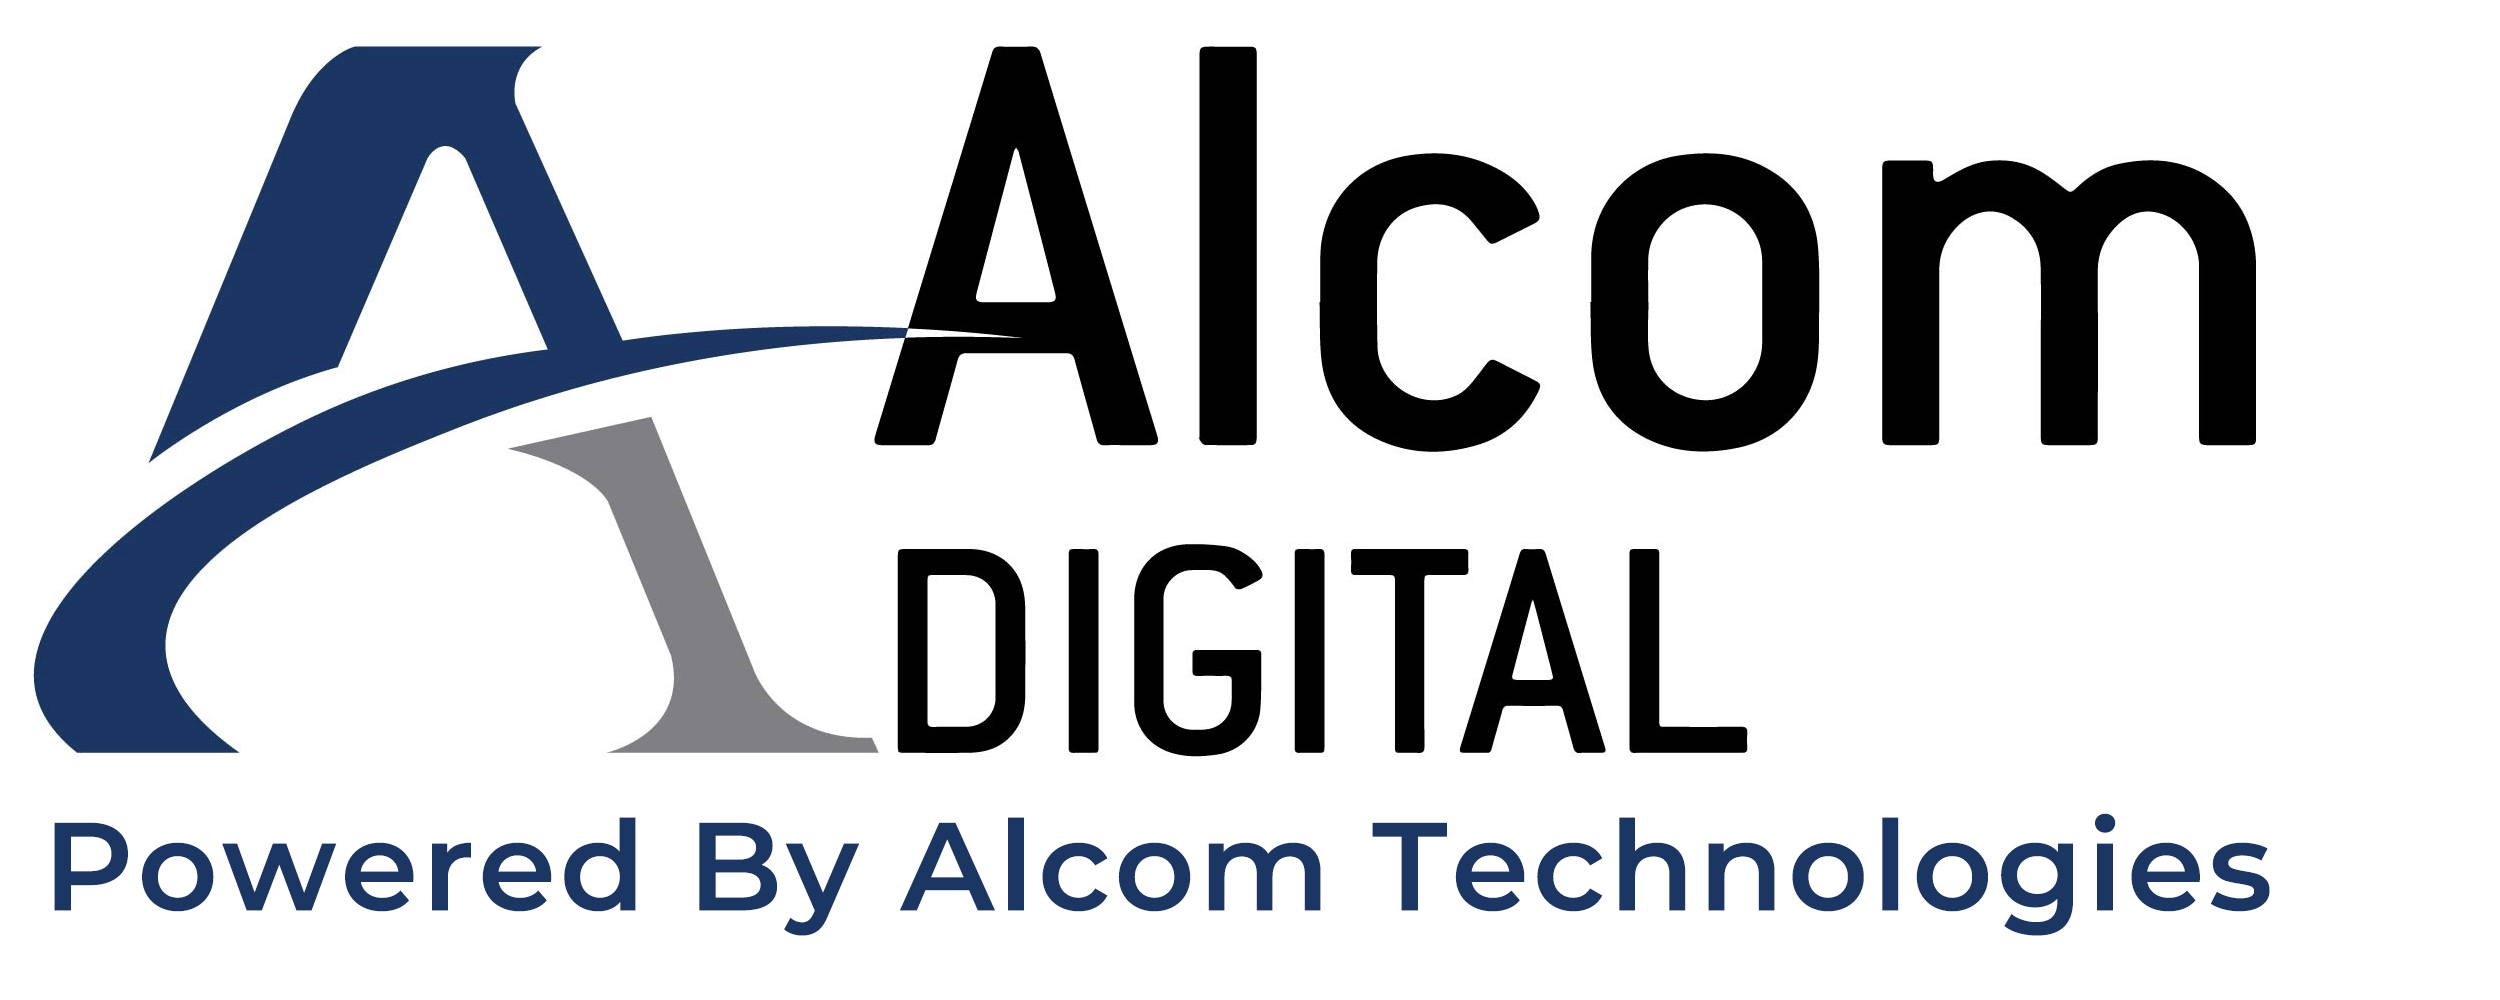 Alcom Digital Marketing Services